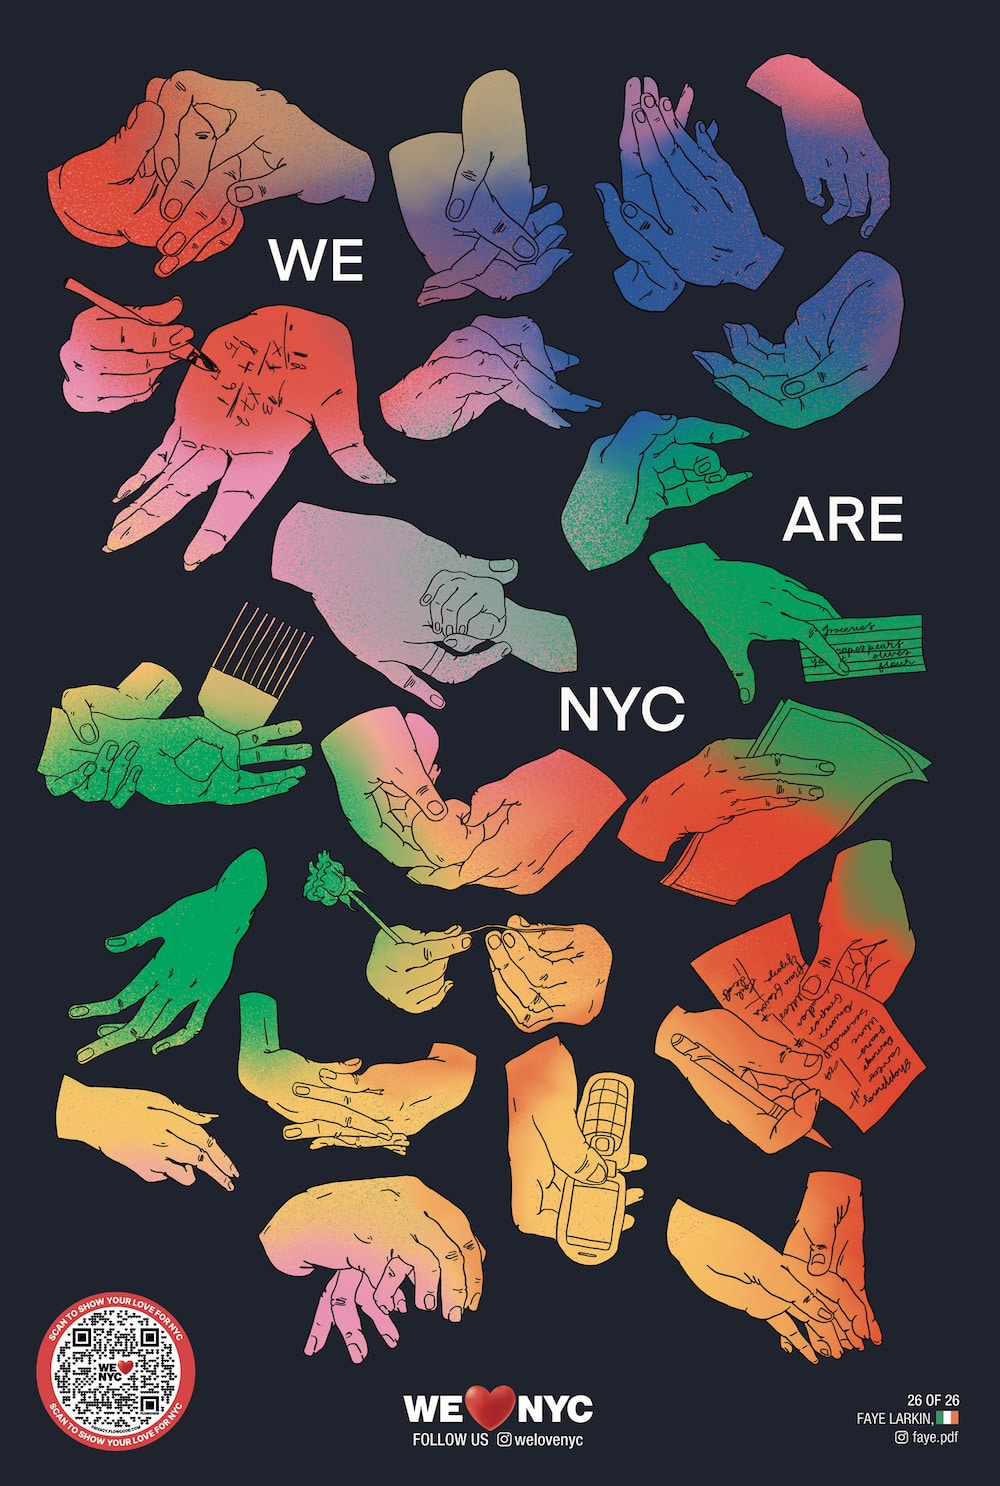 Agentur Founders gestaltet Rebranding für NewY York: Artist Plakat von Faye Larkin